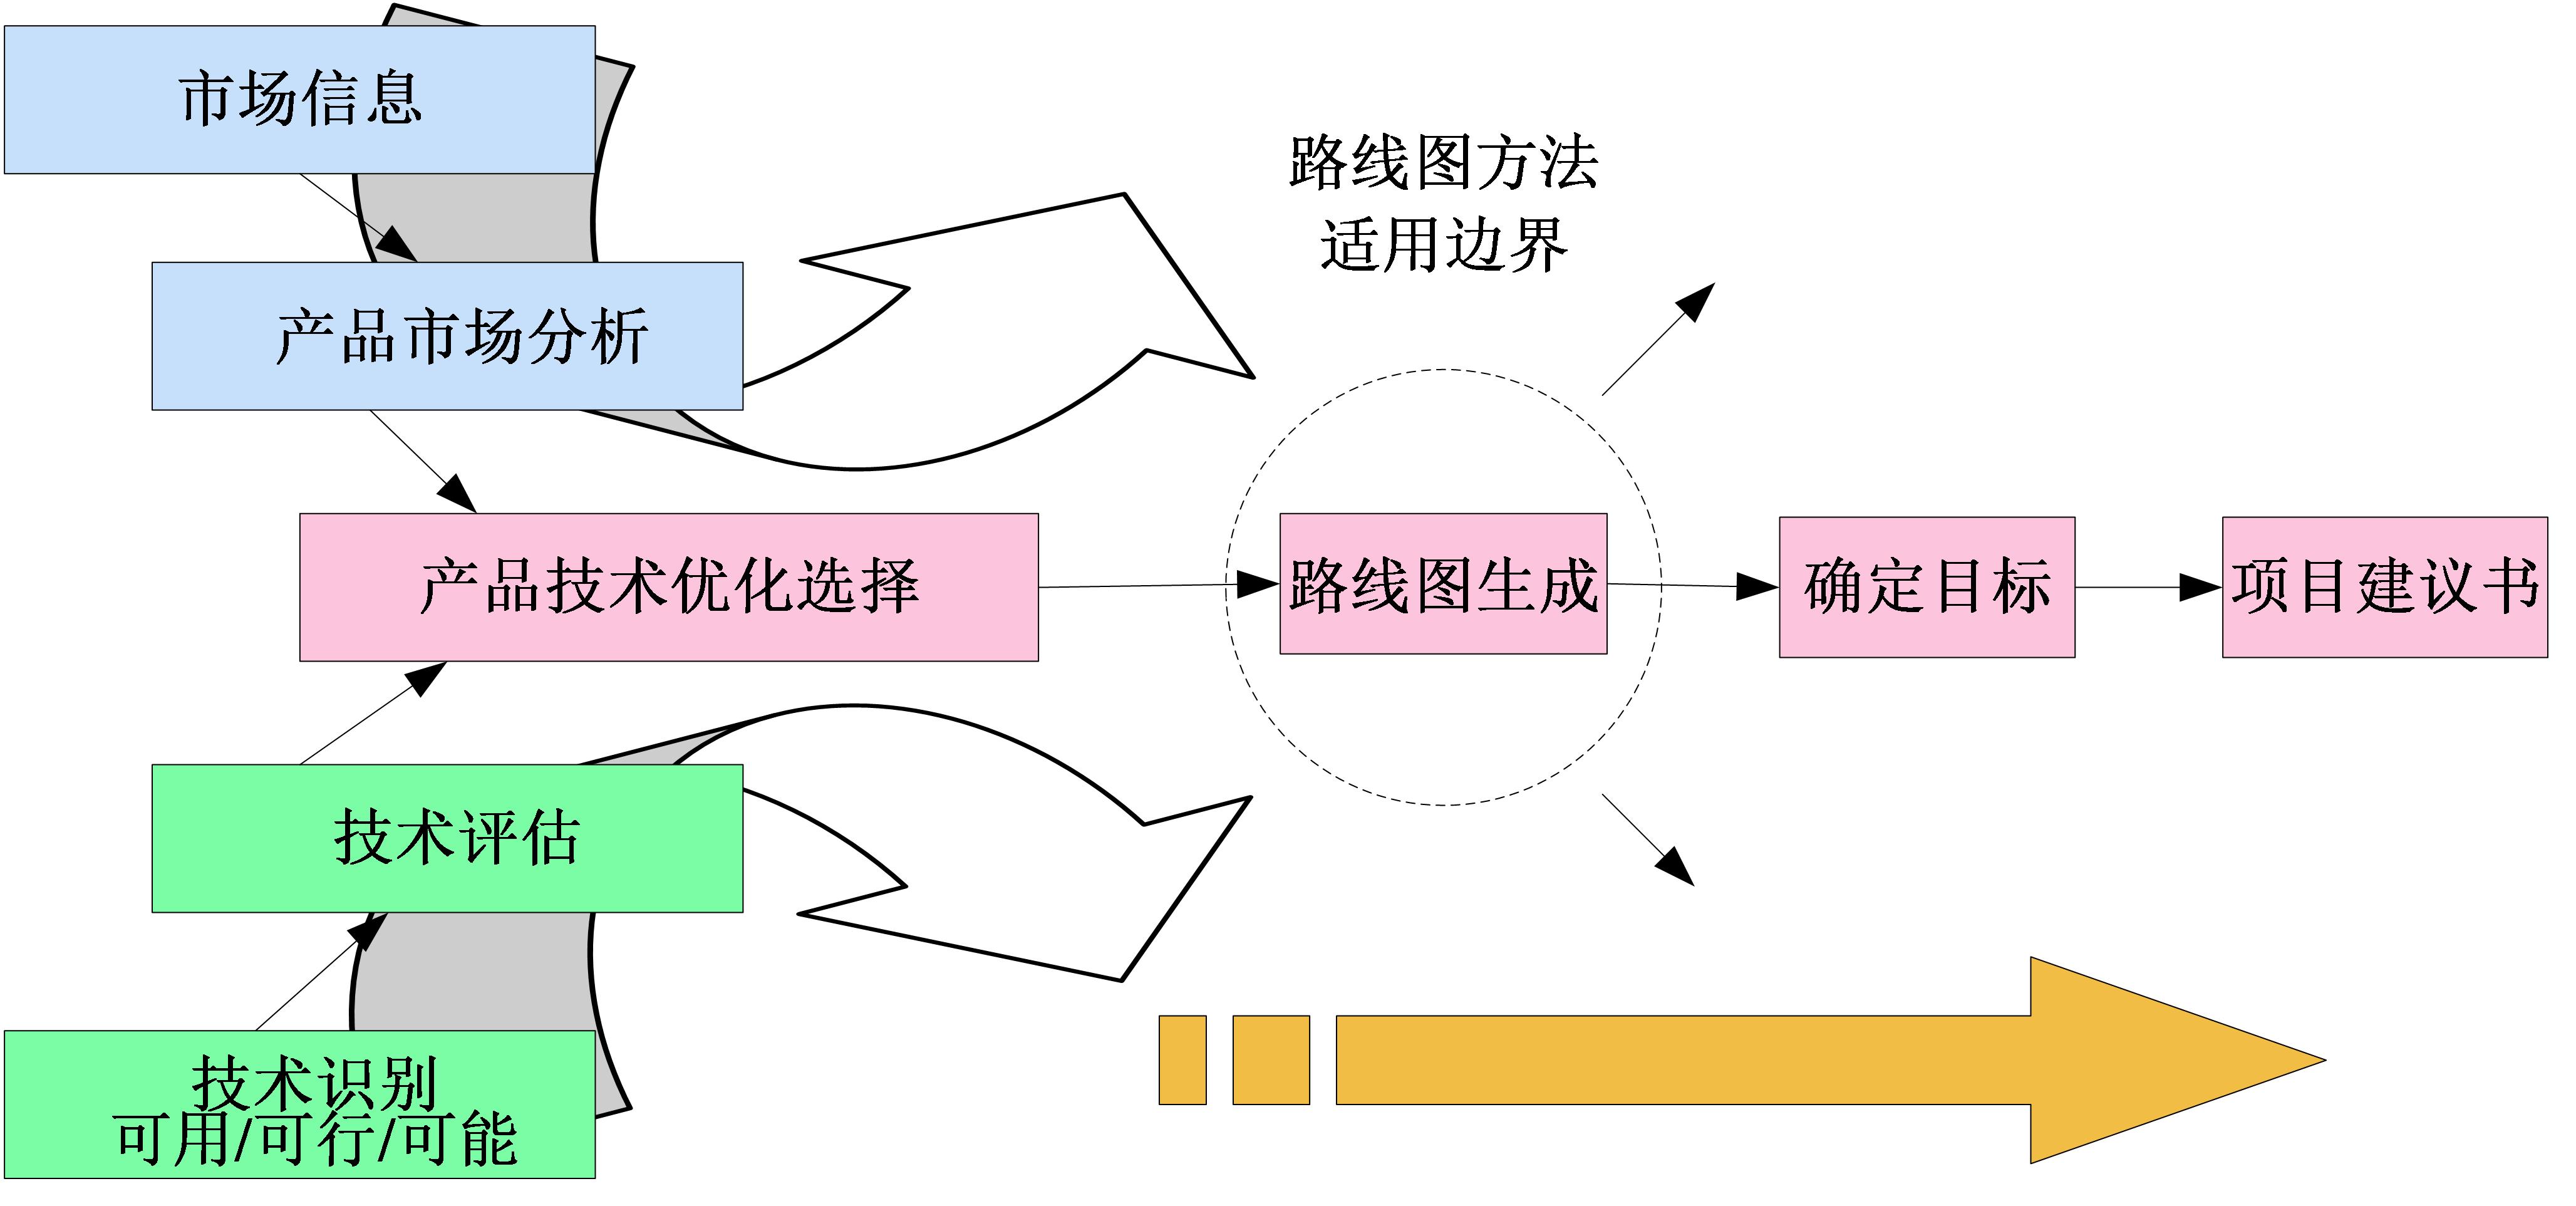 浅析小程序云原生数据库的设计与应用_数据库_杨哲_InfoQ精选文章